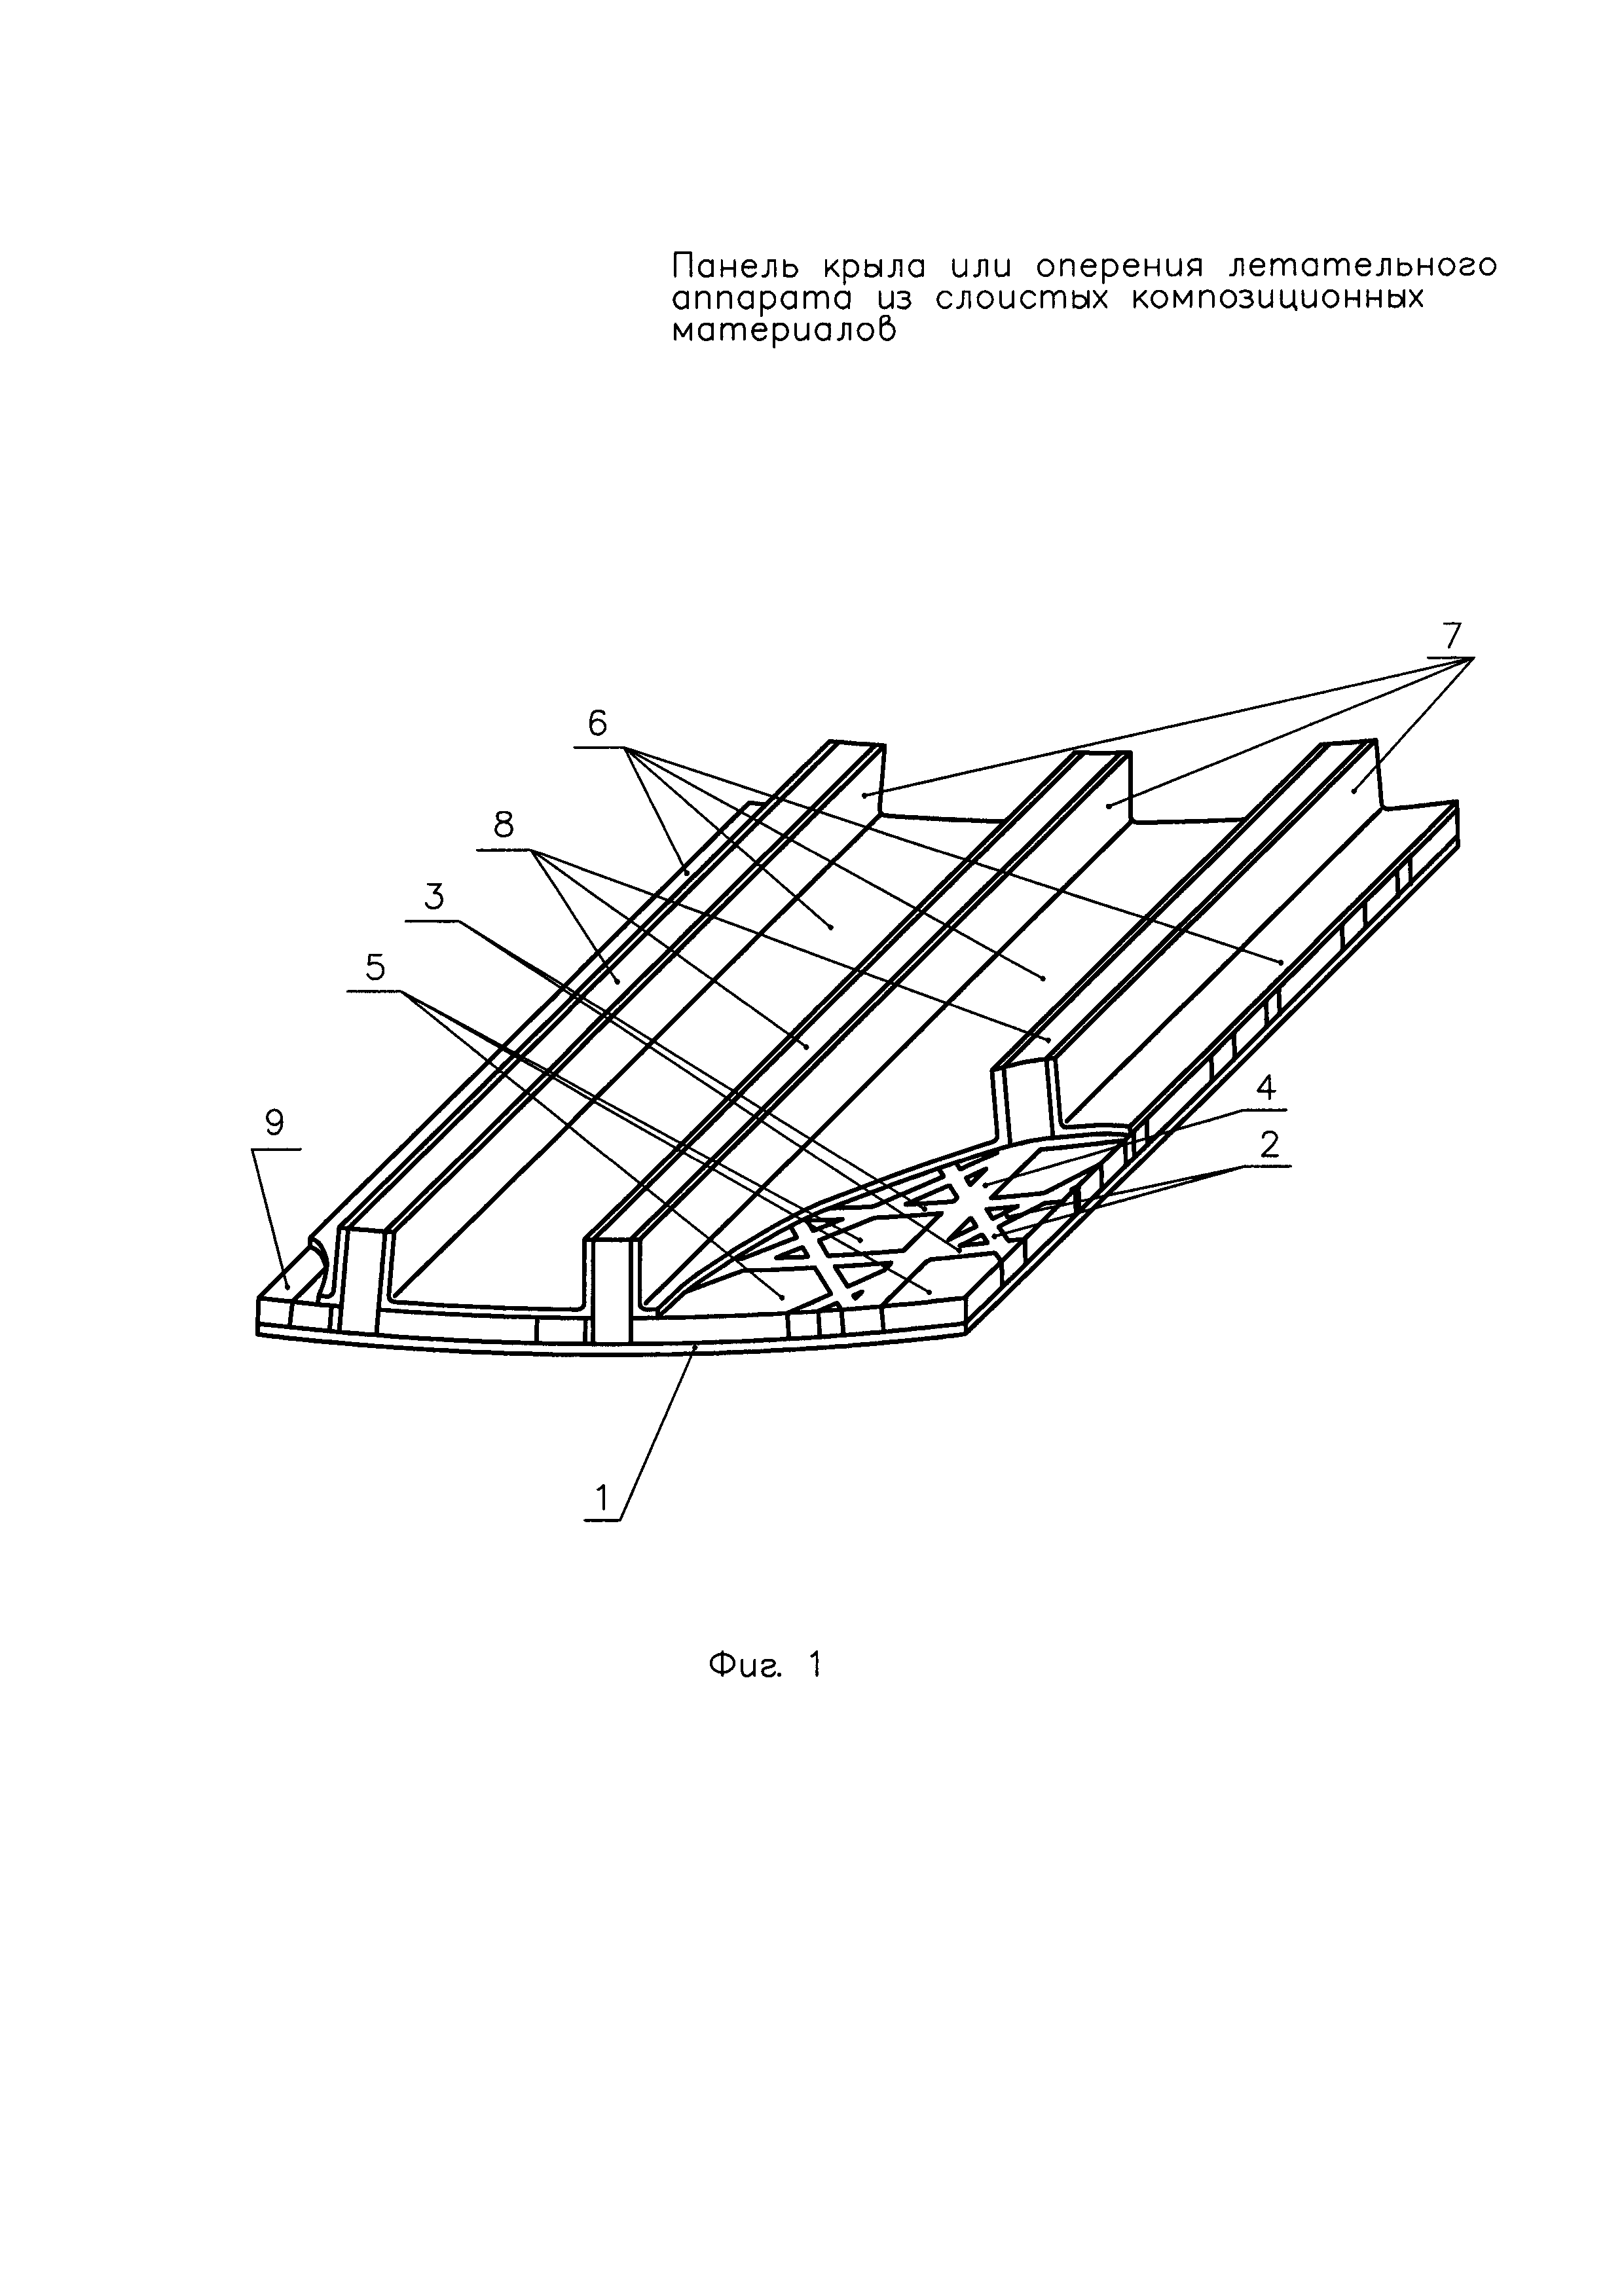 Панель крыла или оперения летательного аппарата из слоистых композиционных материалов